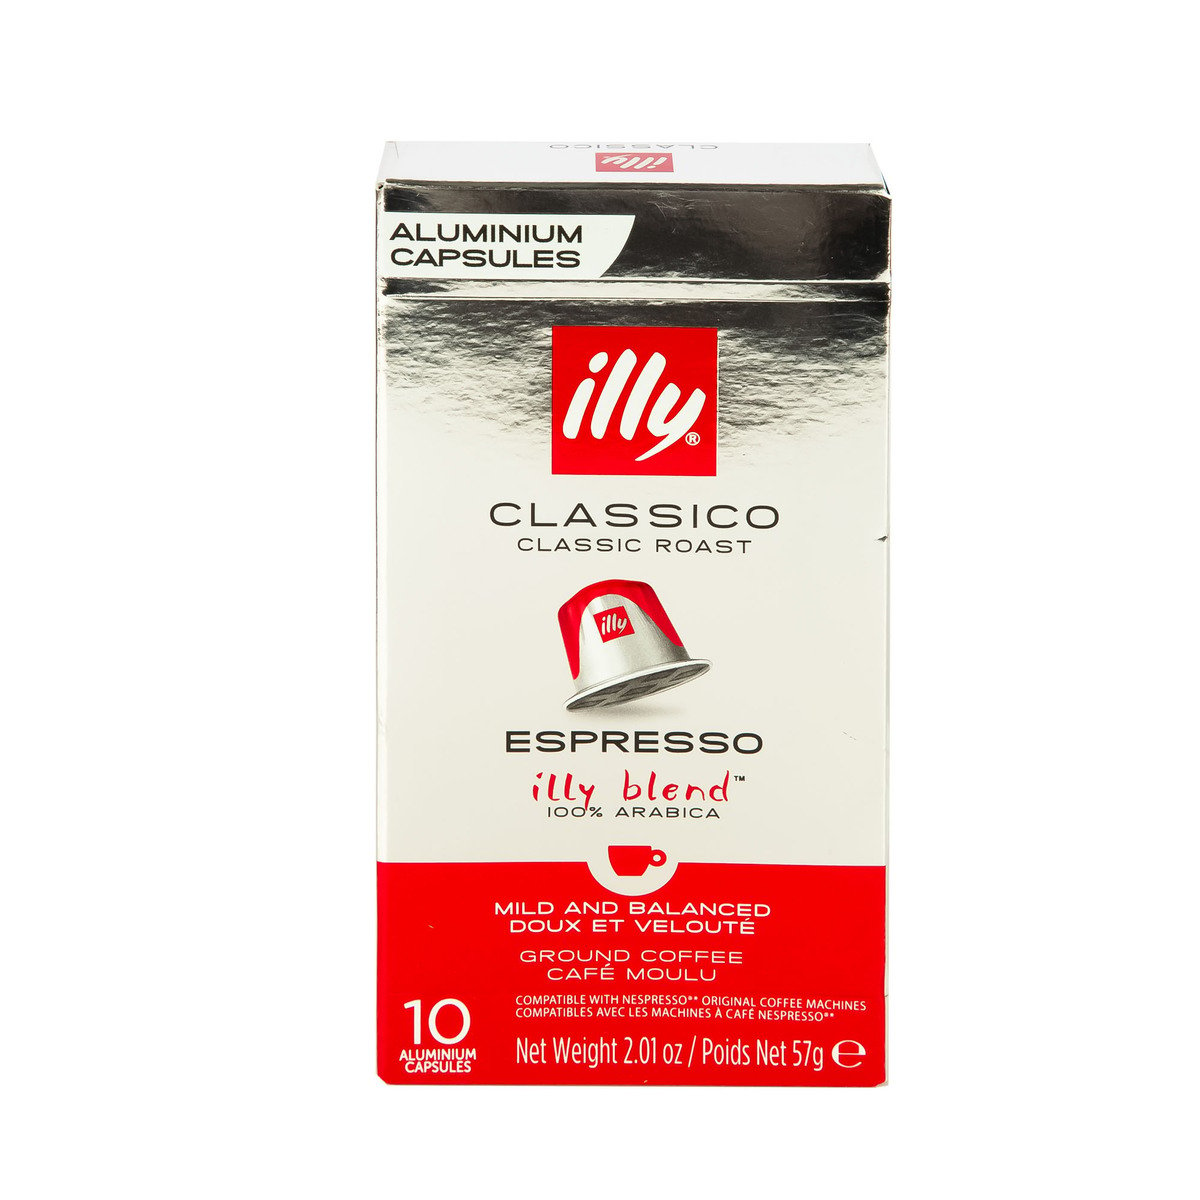 Illy Classico Classic Roast Espresso Aluminium Capsules 10 pcs